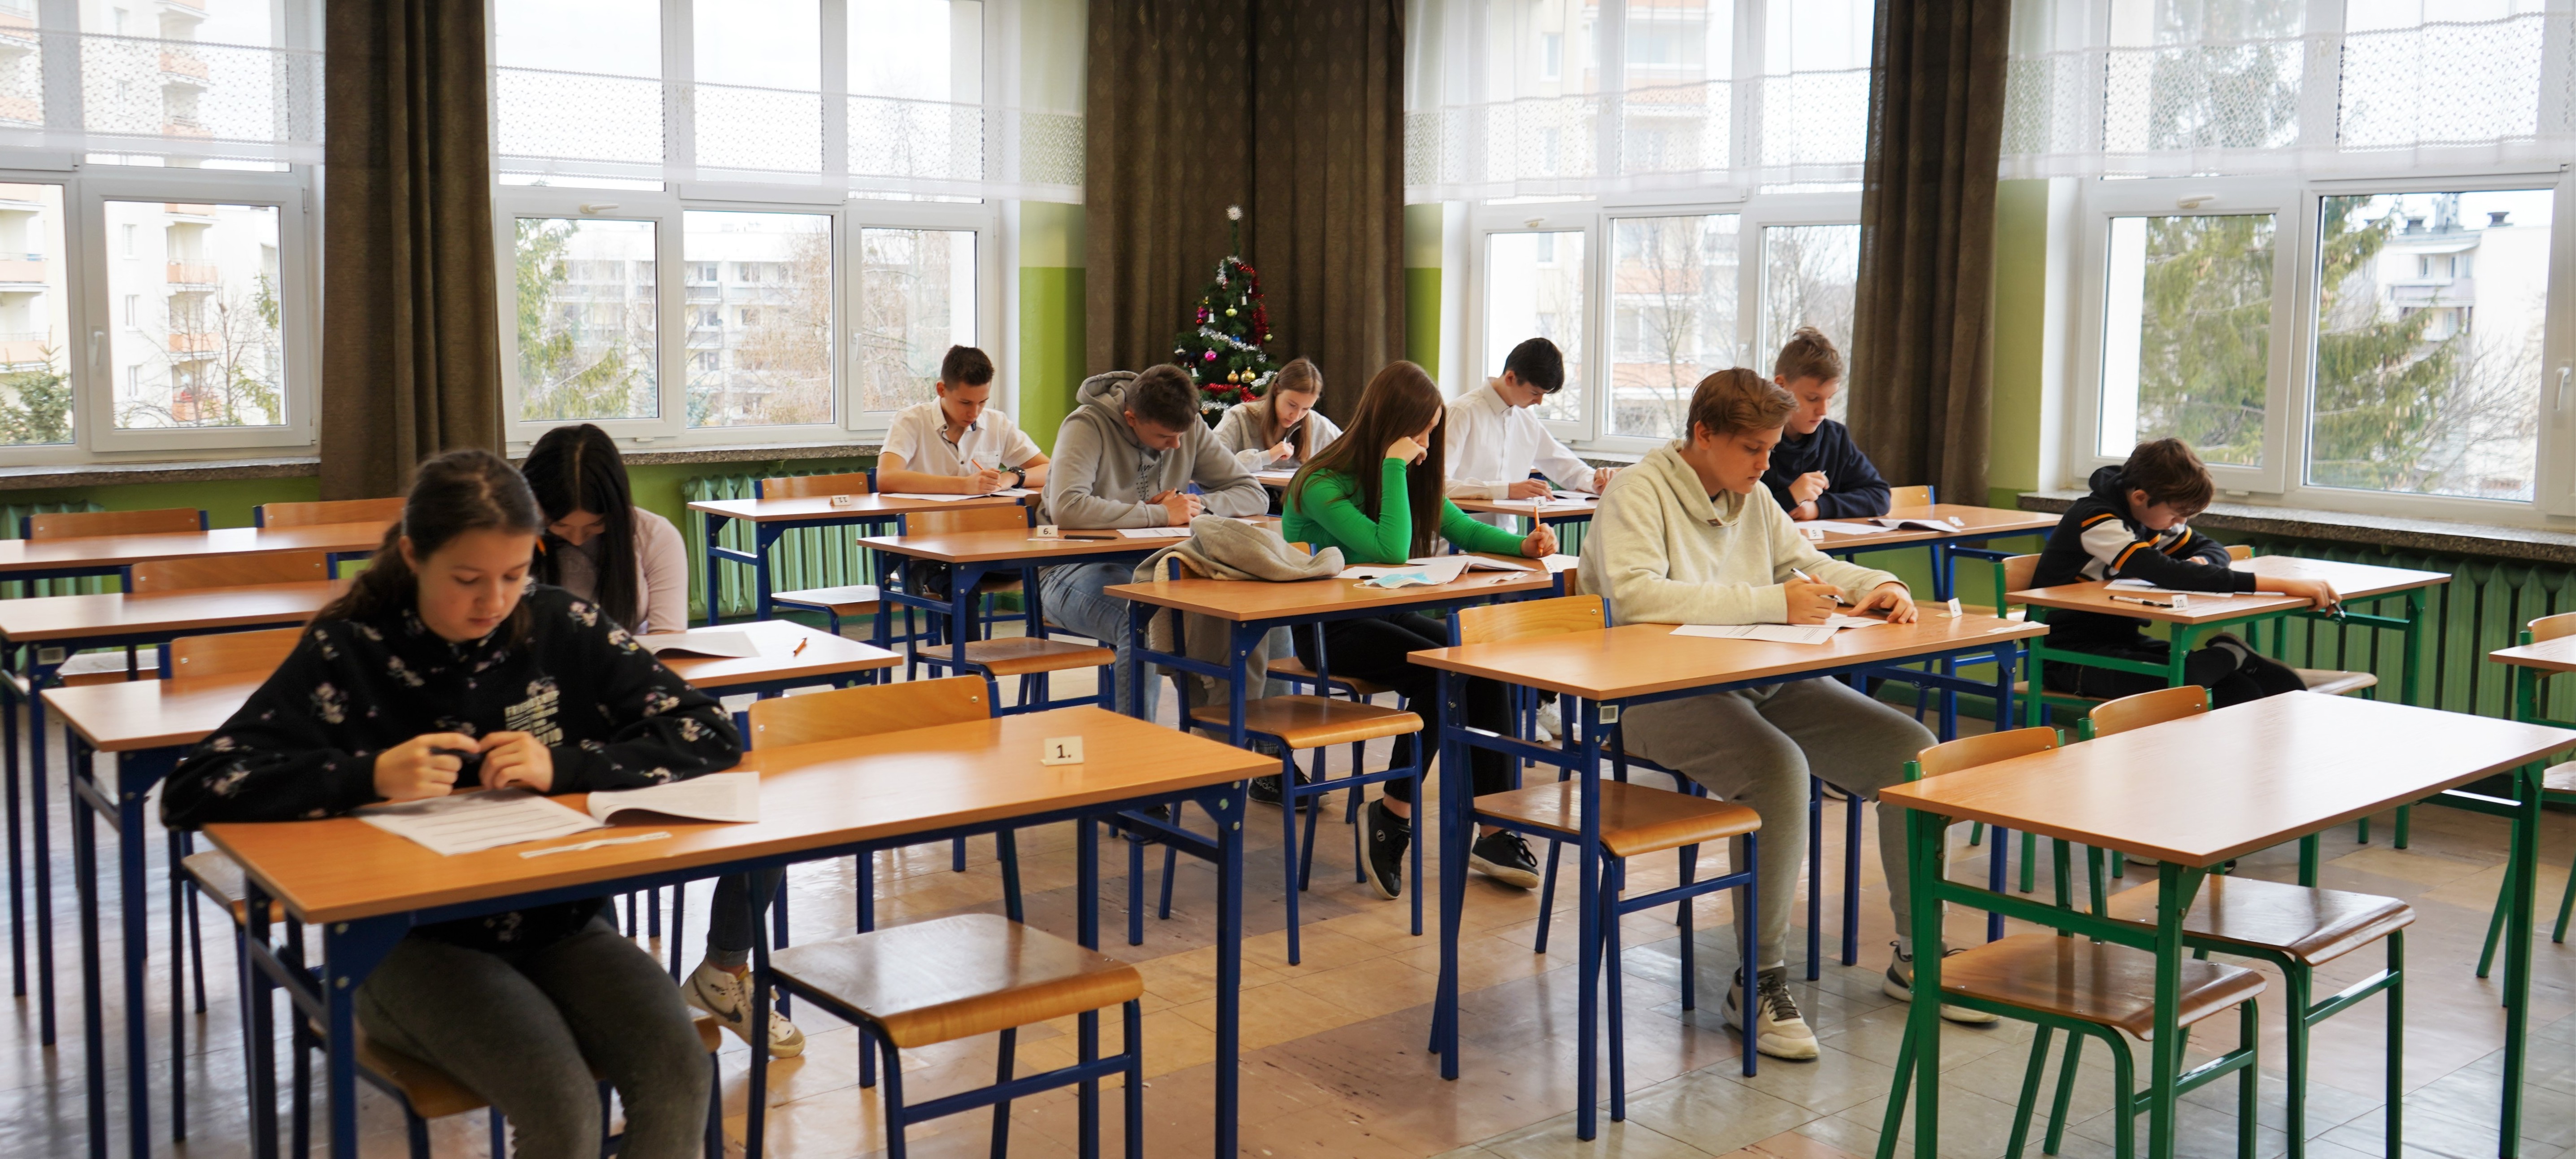 Uczniowie piszący egzamin w klasie.